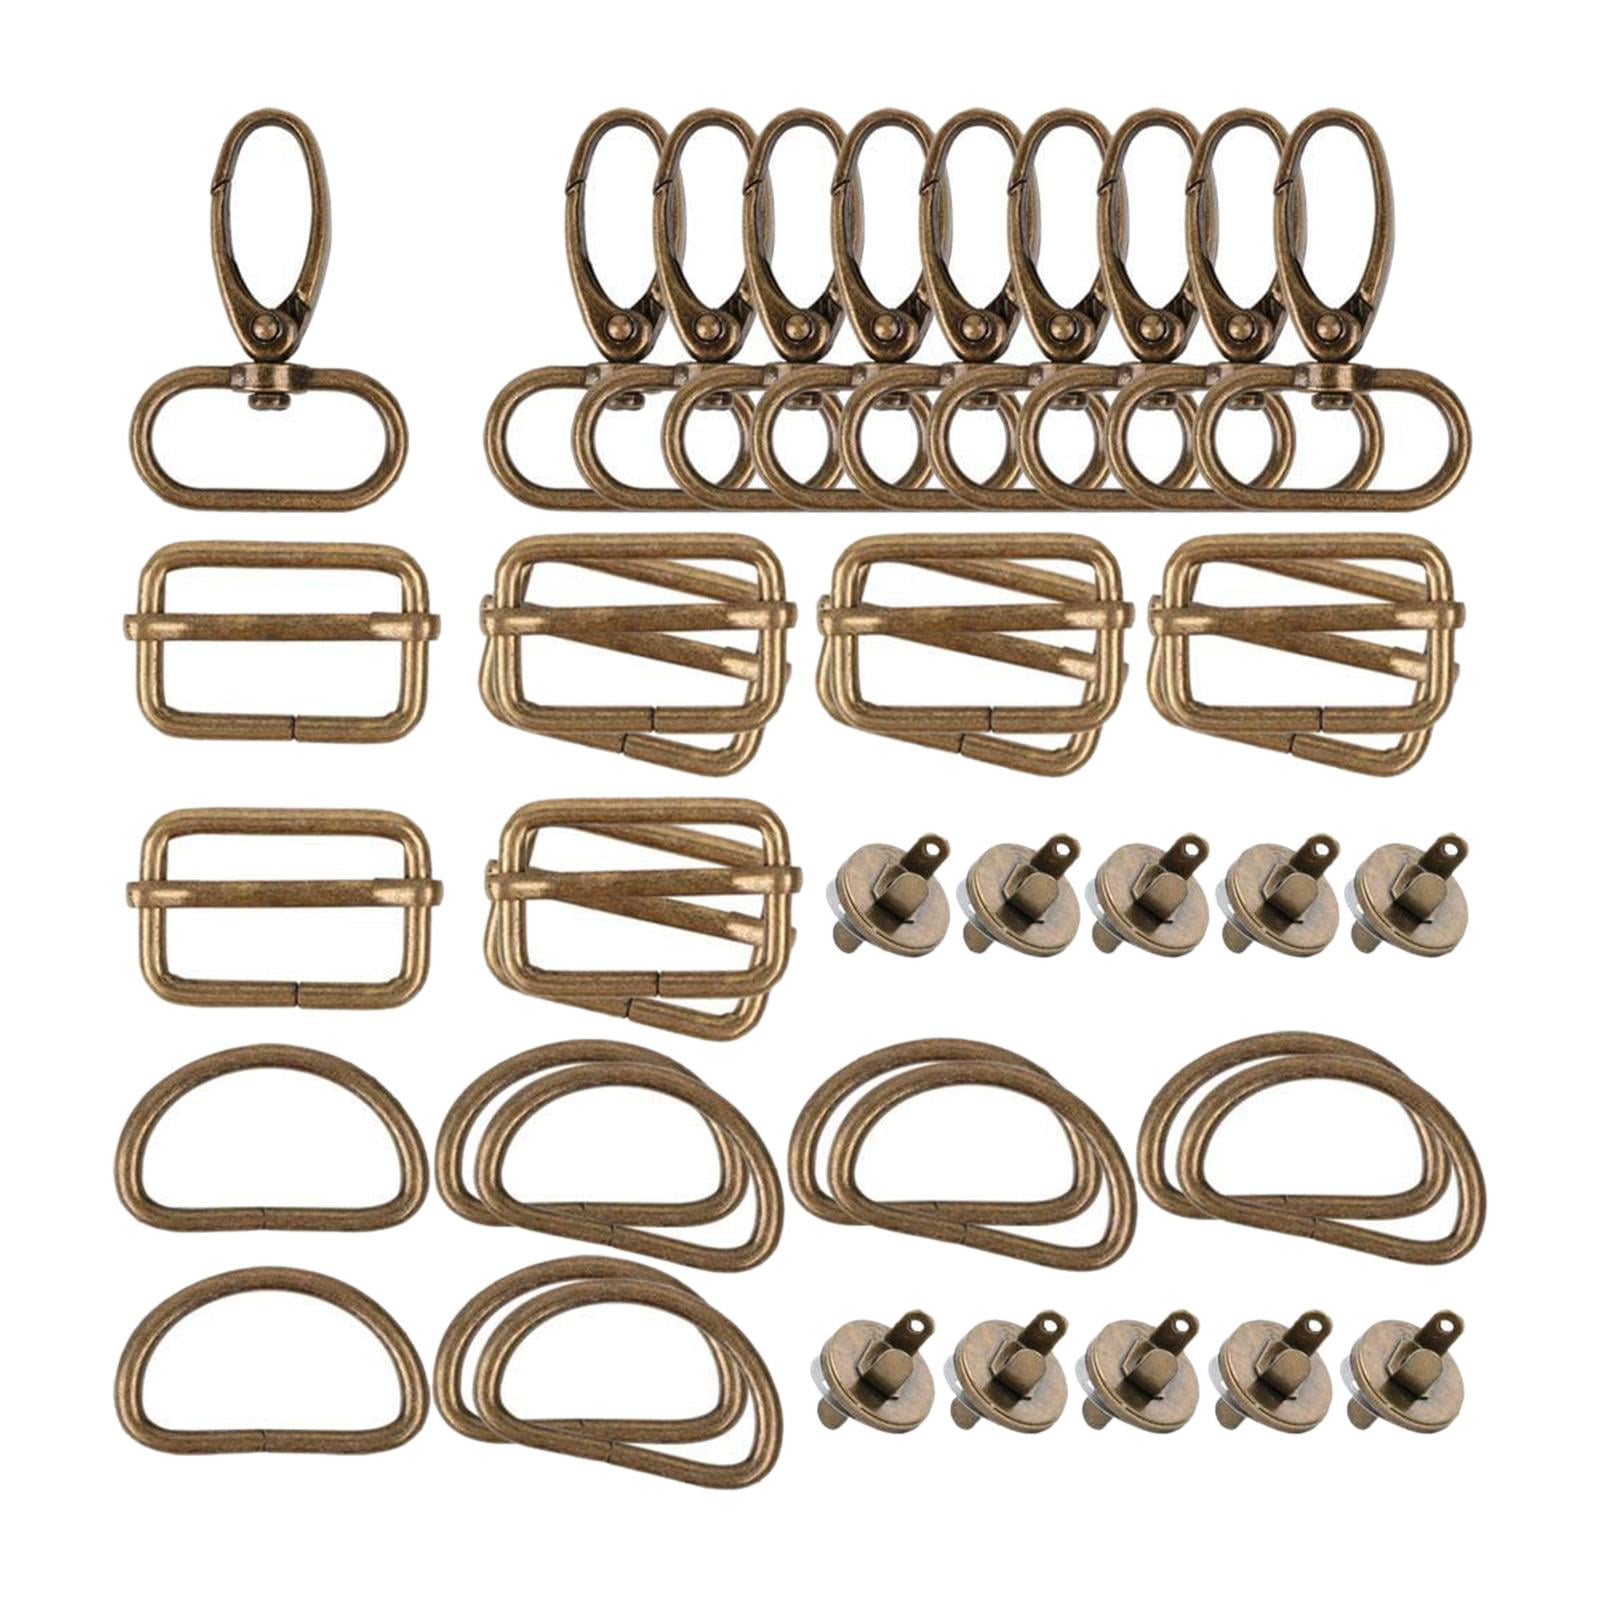 50 Pcs Braclet Kit Clasps For Jewelry Making Swivel Clasp Bracelet